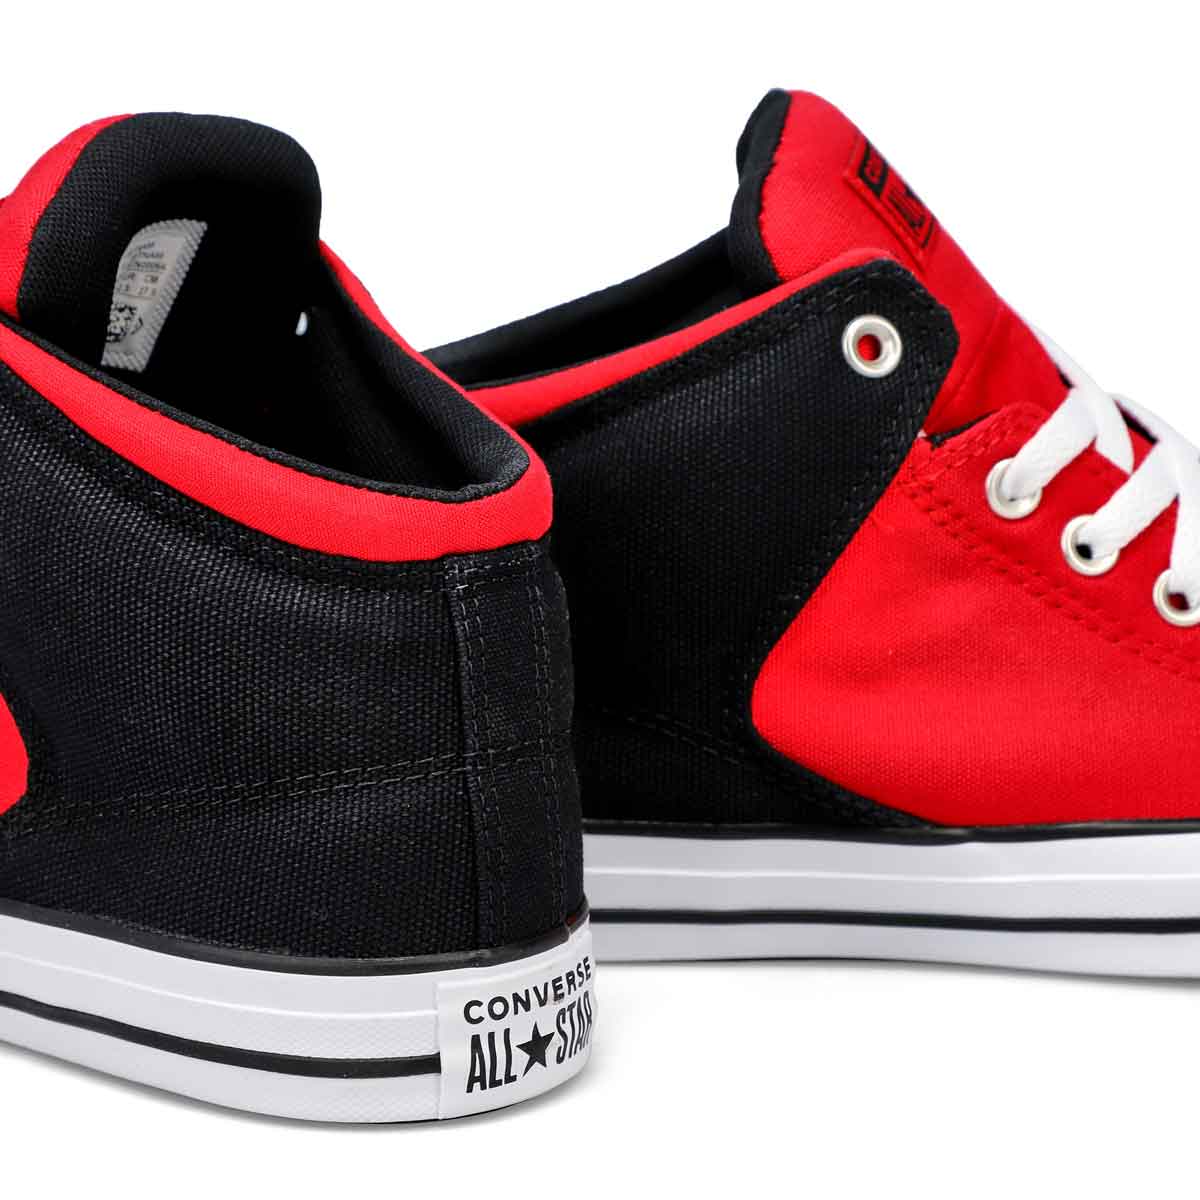 Men's All Star High Street Sneaker - Red/Black